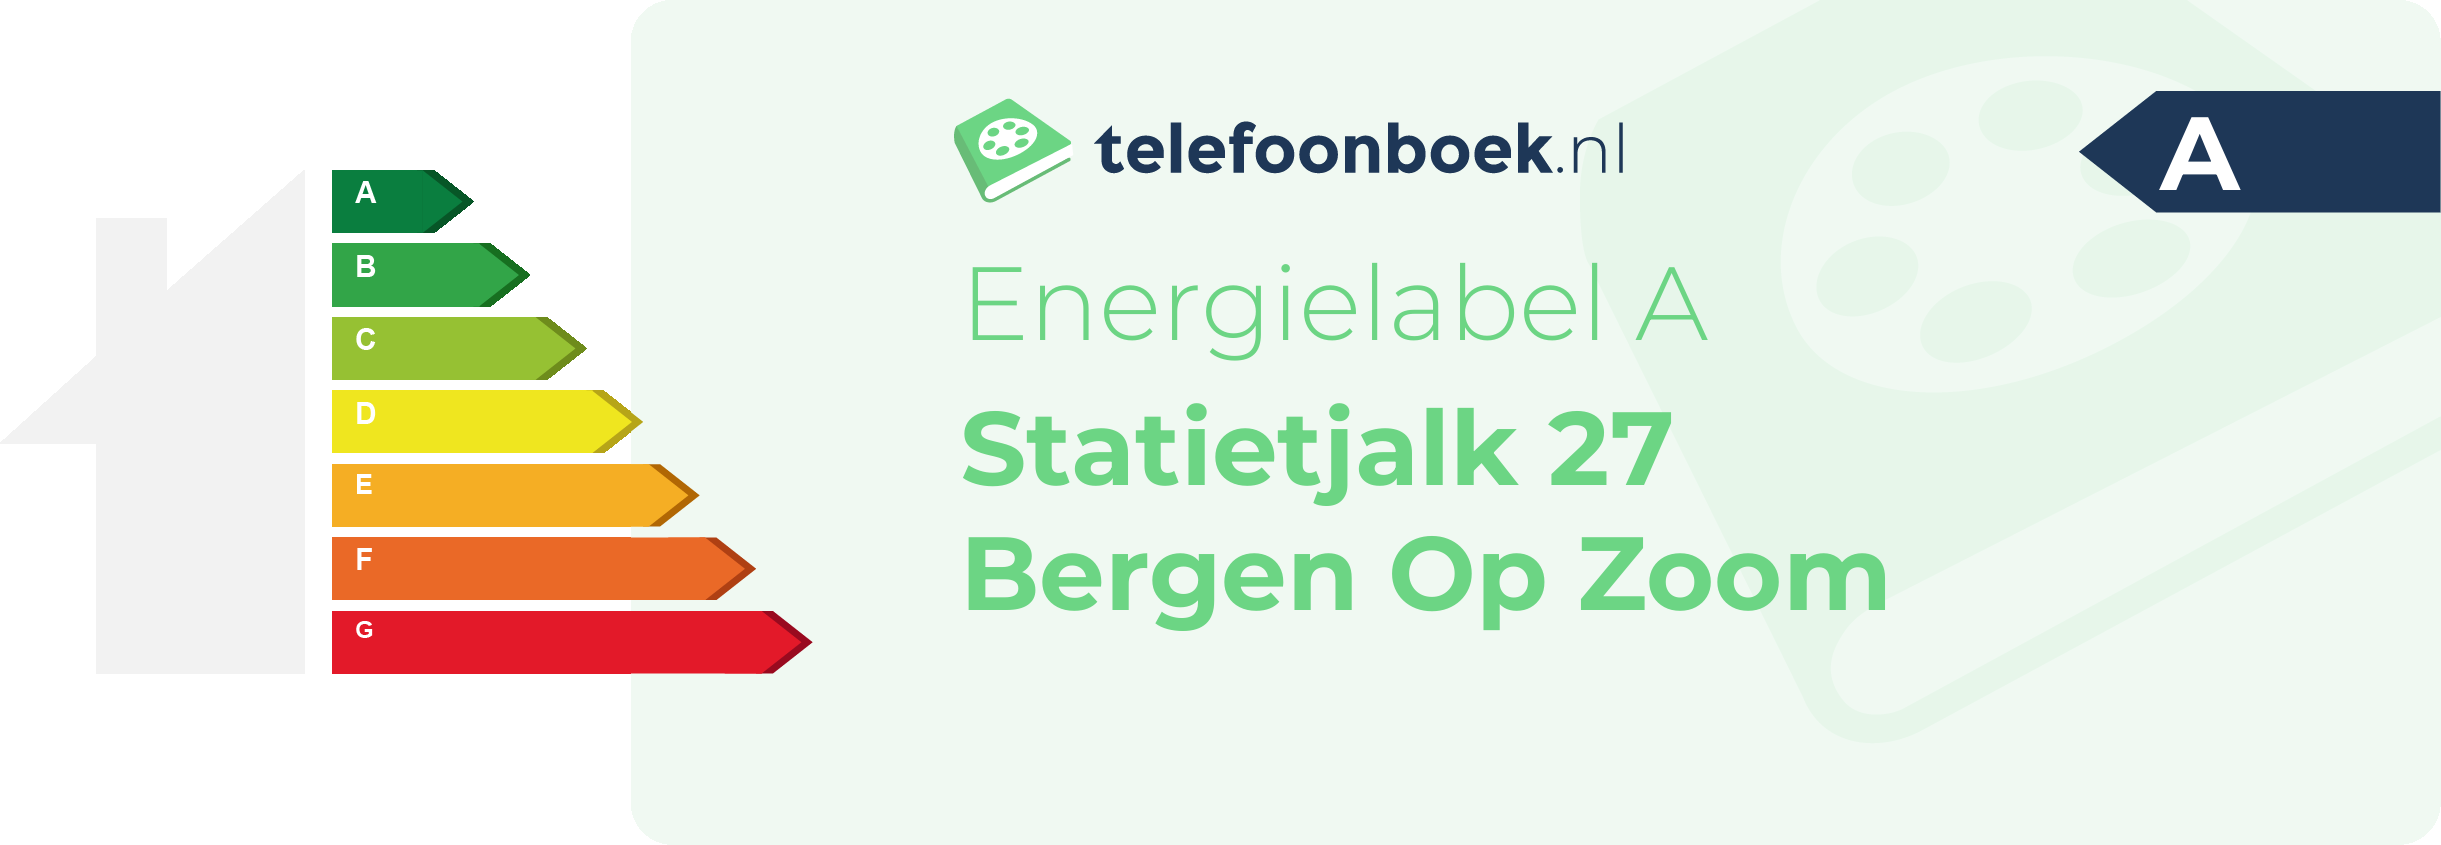 Energielabel Statietjalk 27 Bergen Op Zoom